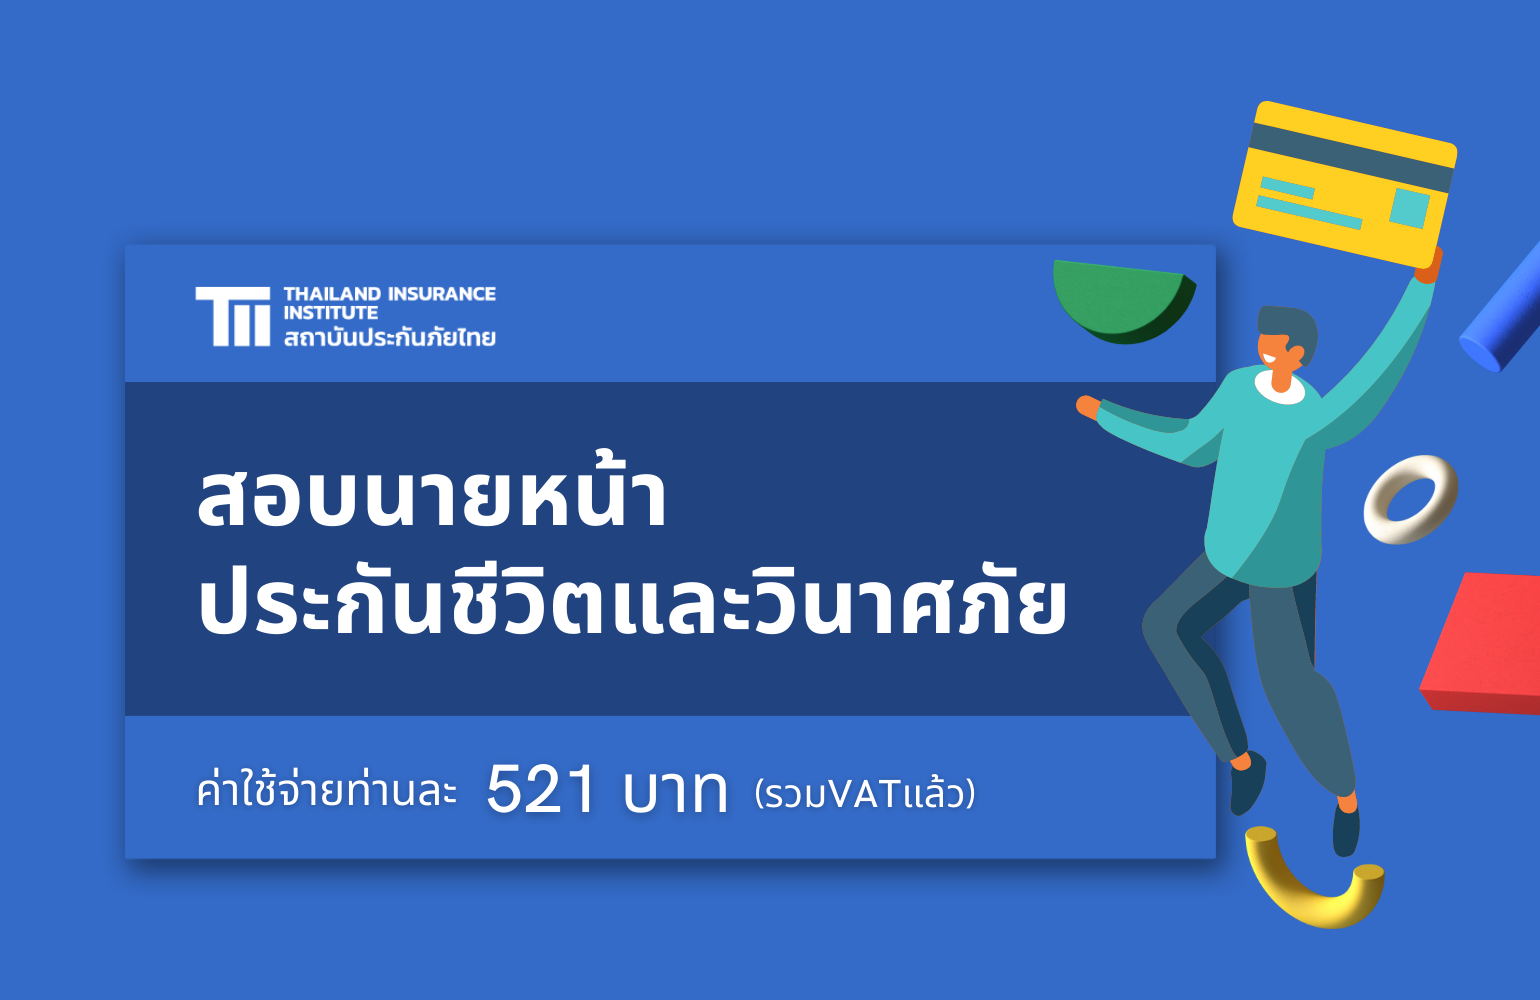 สถาบันประกันภัยไทยจัดหลักสูตรติว+สอบนายหน้าฯ ปี 2565 2